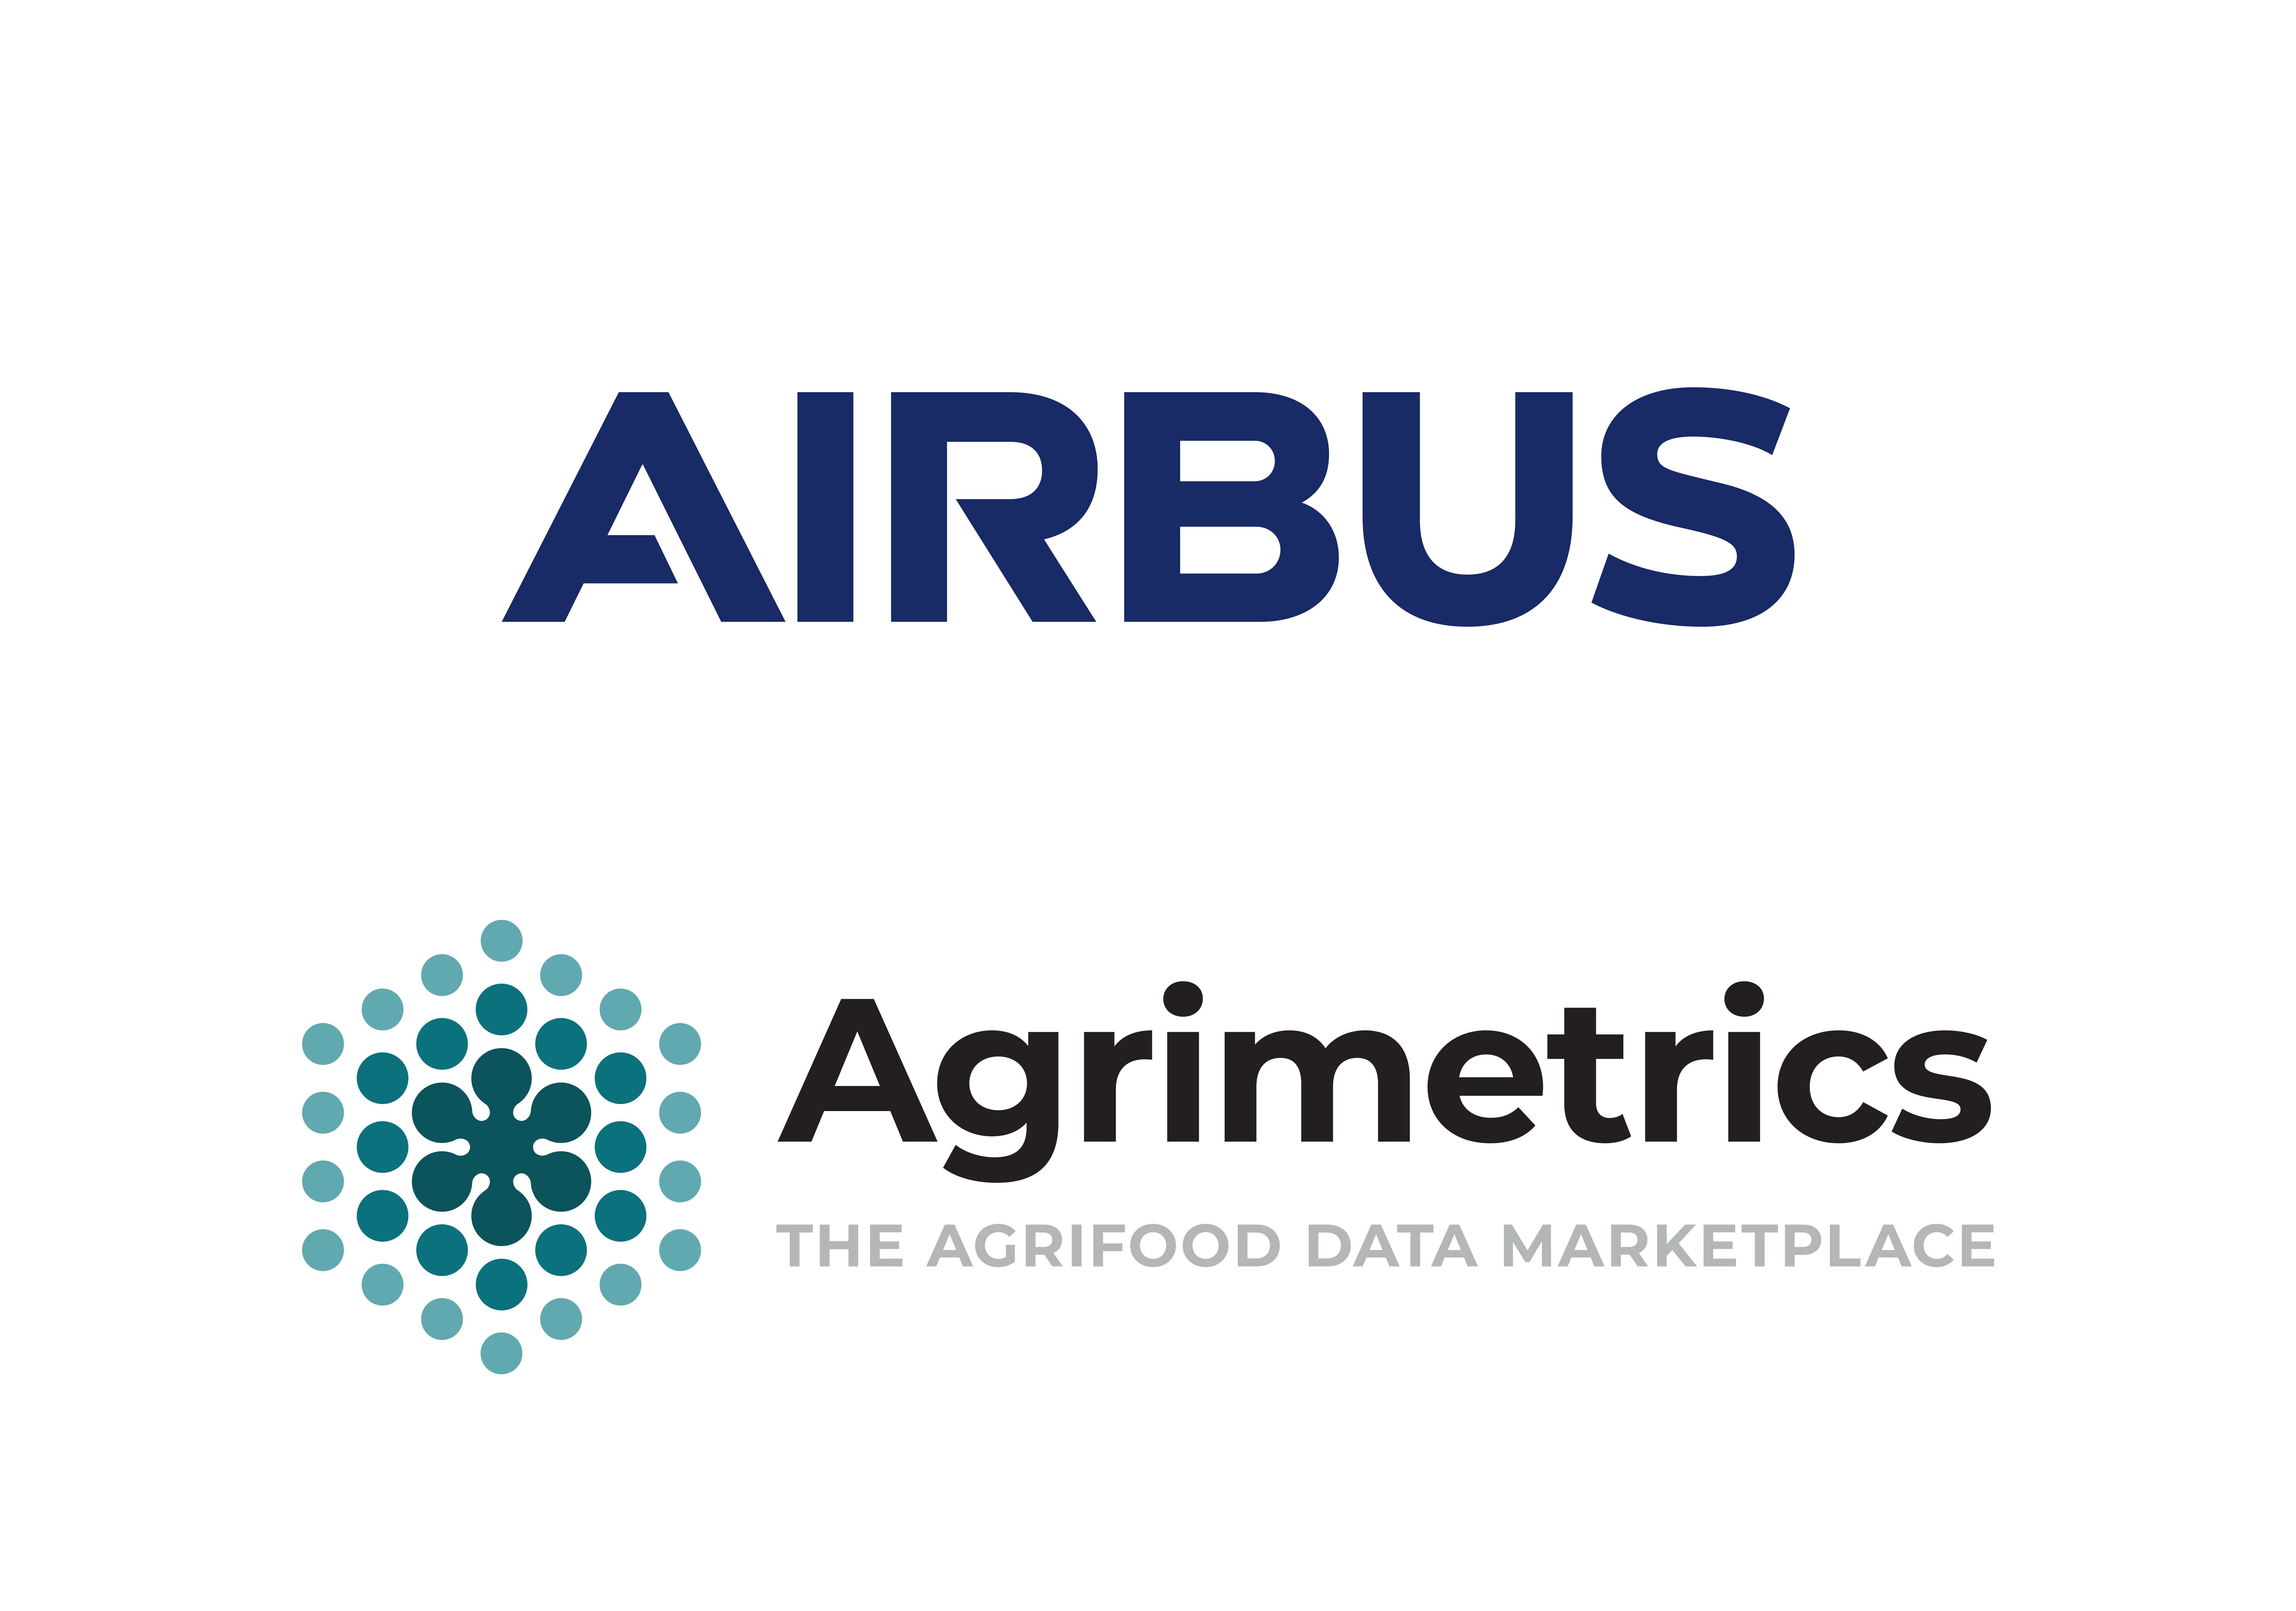 Airbus Agrimetrics